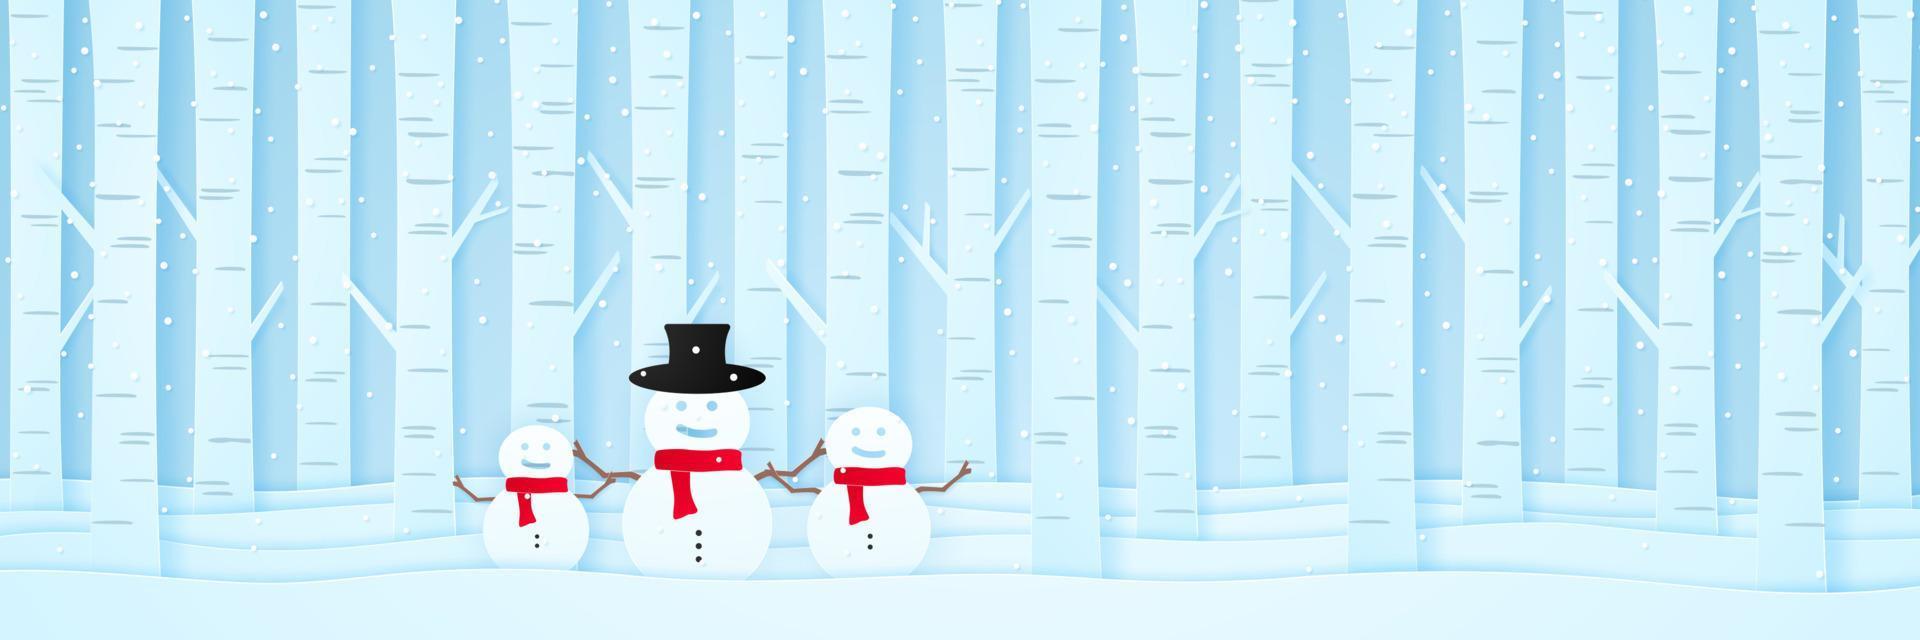 joyeux noël, bienvenue bonhomme de neige et pins sur la neige dans un paysage d'hiver avec des chutes de neige, carte d'invitation, style art papier vecteur